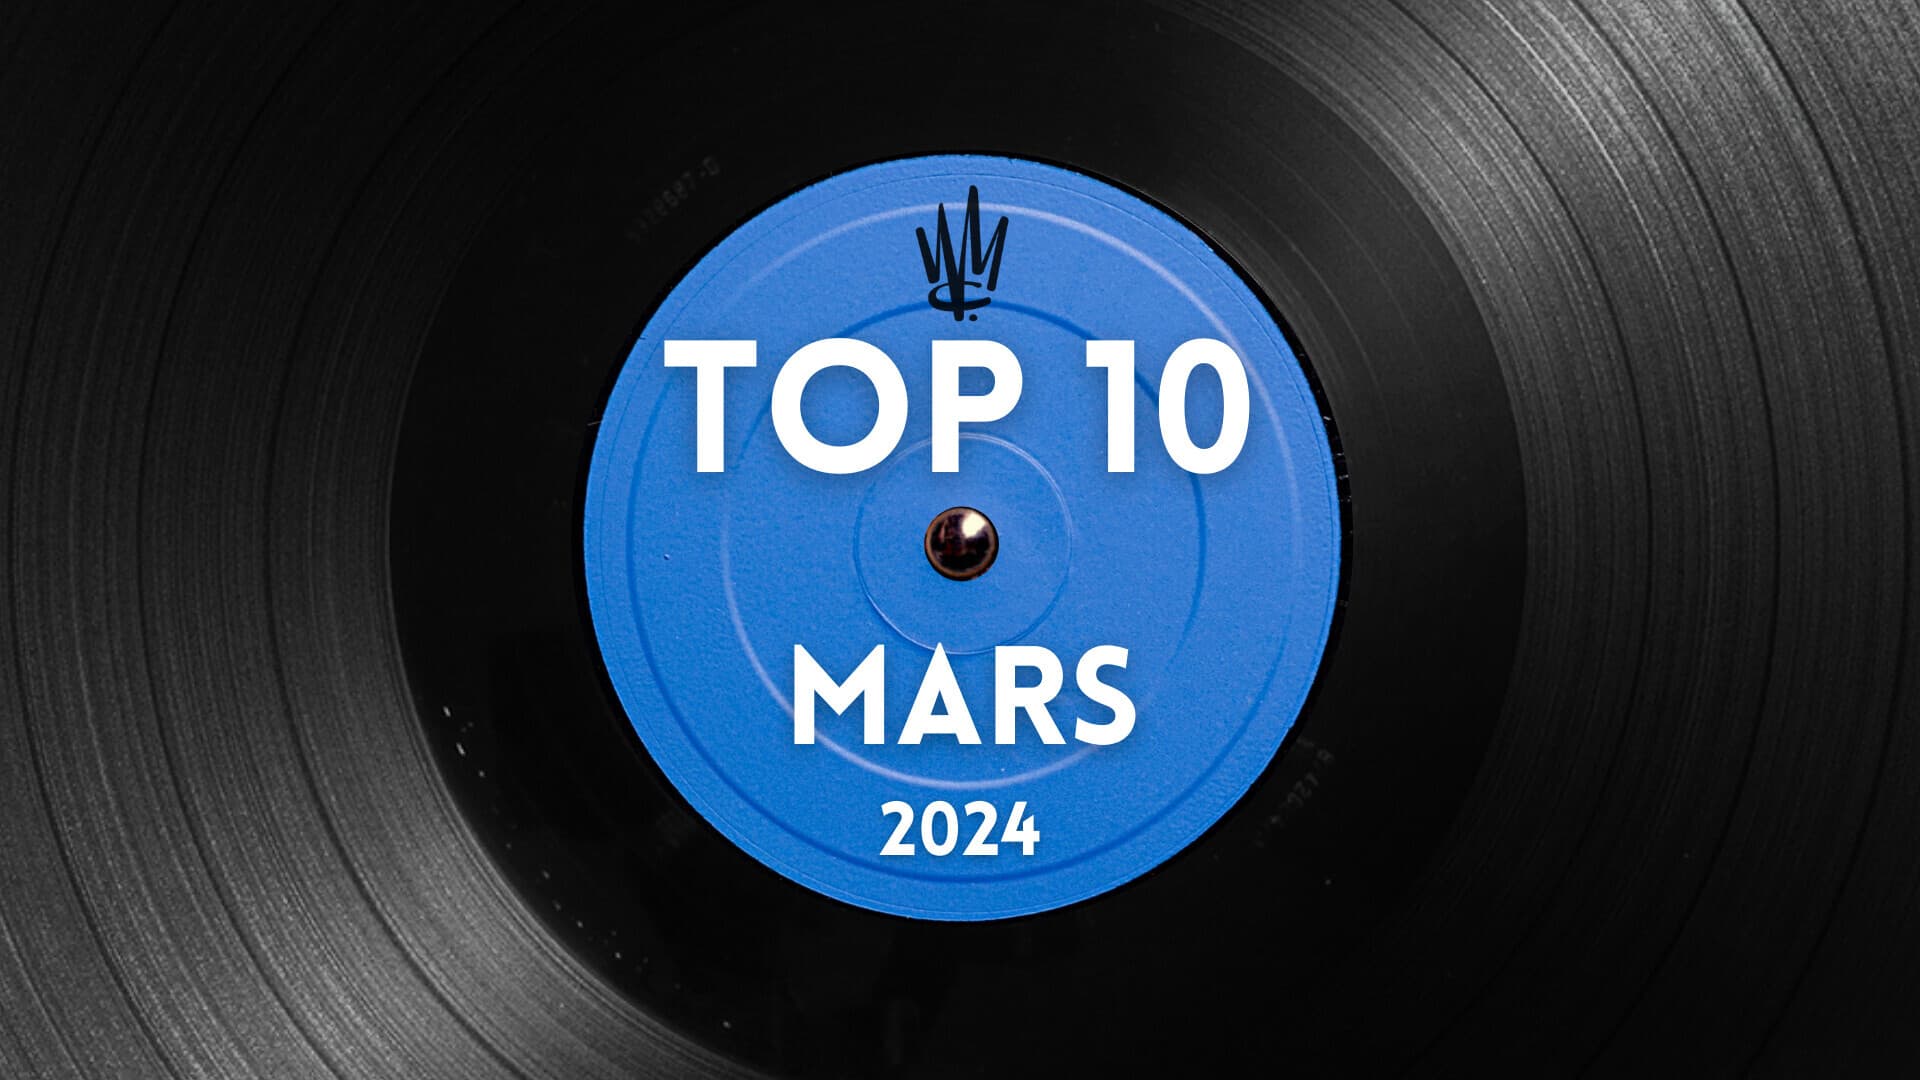 TOP 10 MARS 2024